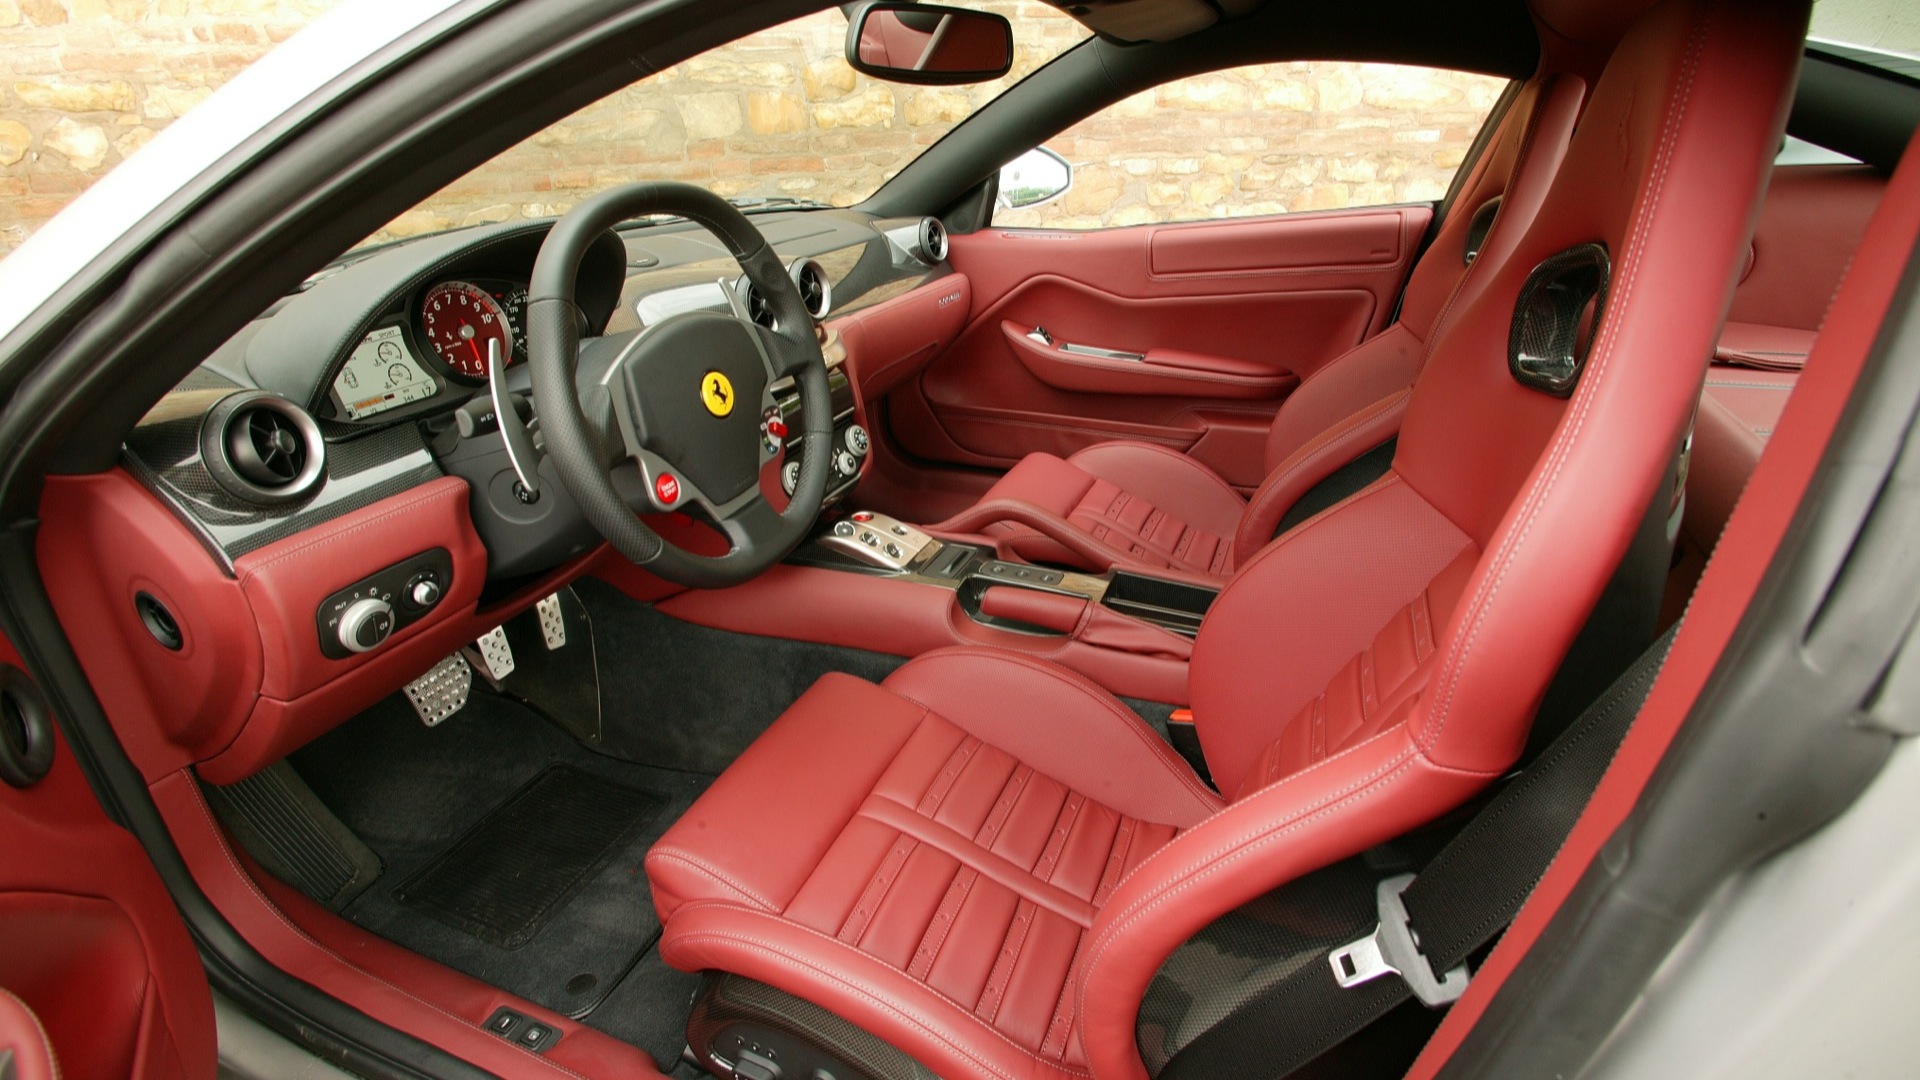 Ferrari-599-2013-GTB-Fiorano Interior